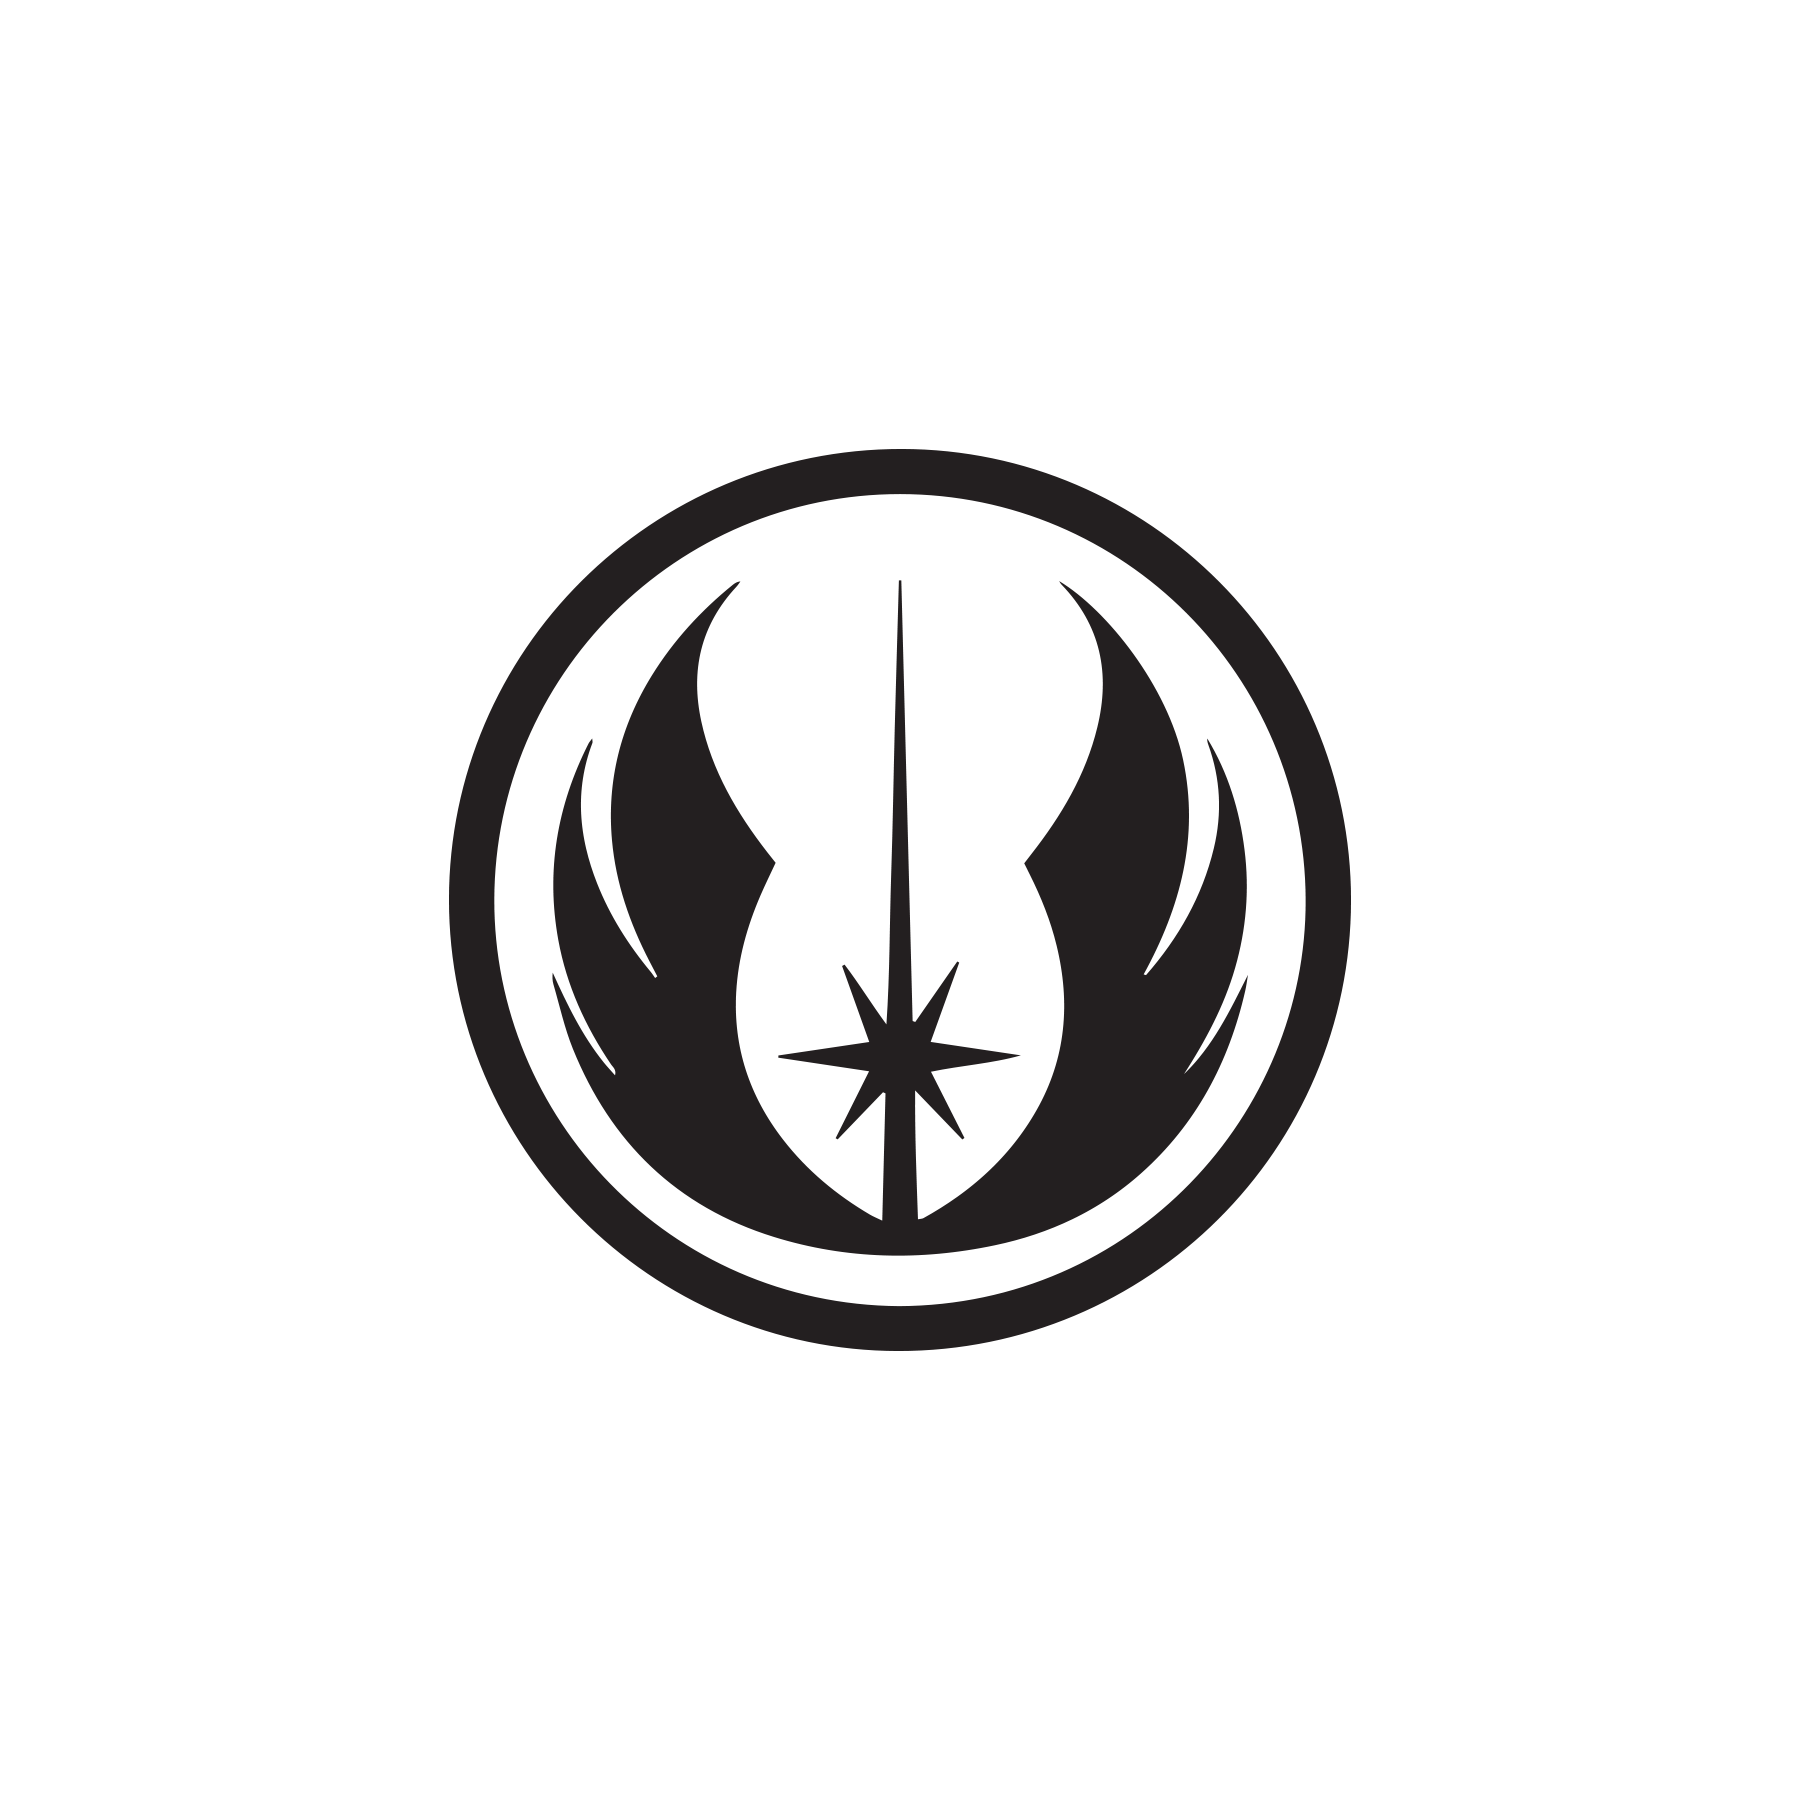 Browse | Converse logo, Star logo, Converse